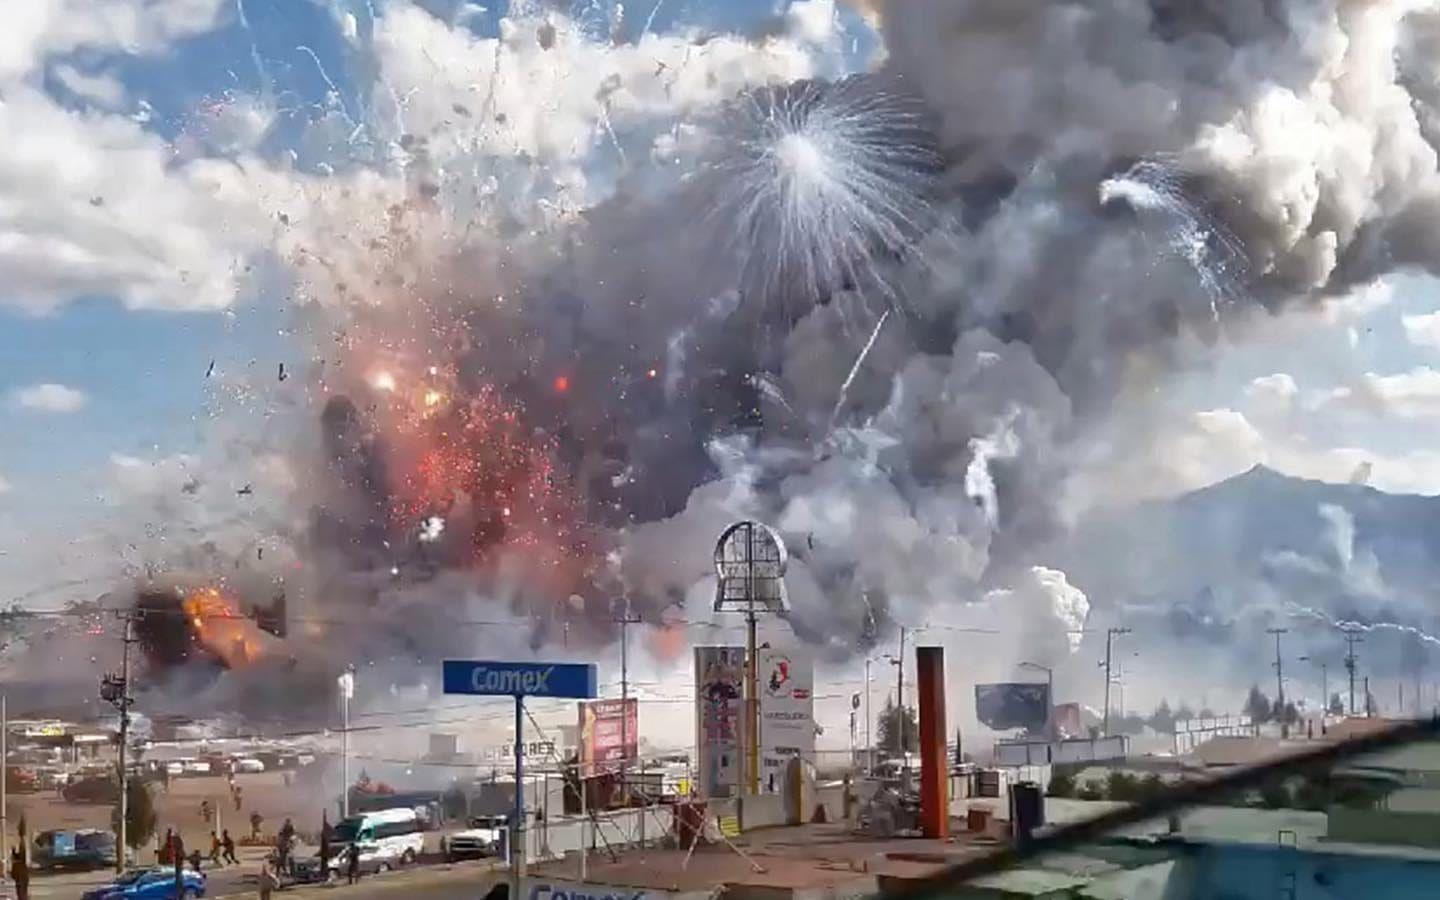 En stor explosion inträffade i Mexico City när stora mängder fyrverkerier råkade explodera. Foto: TT